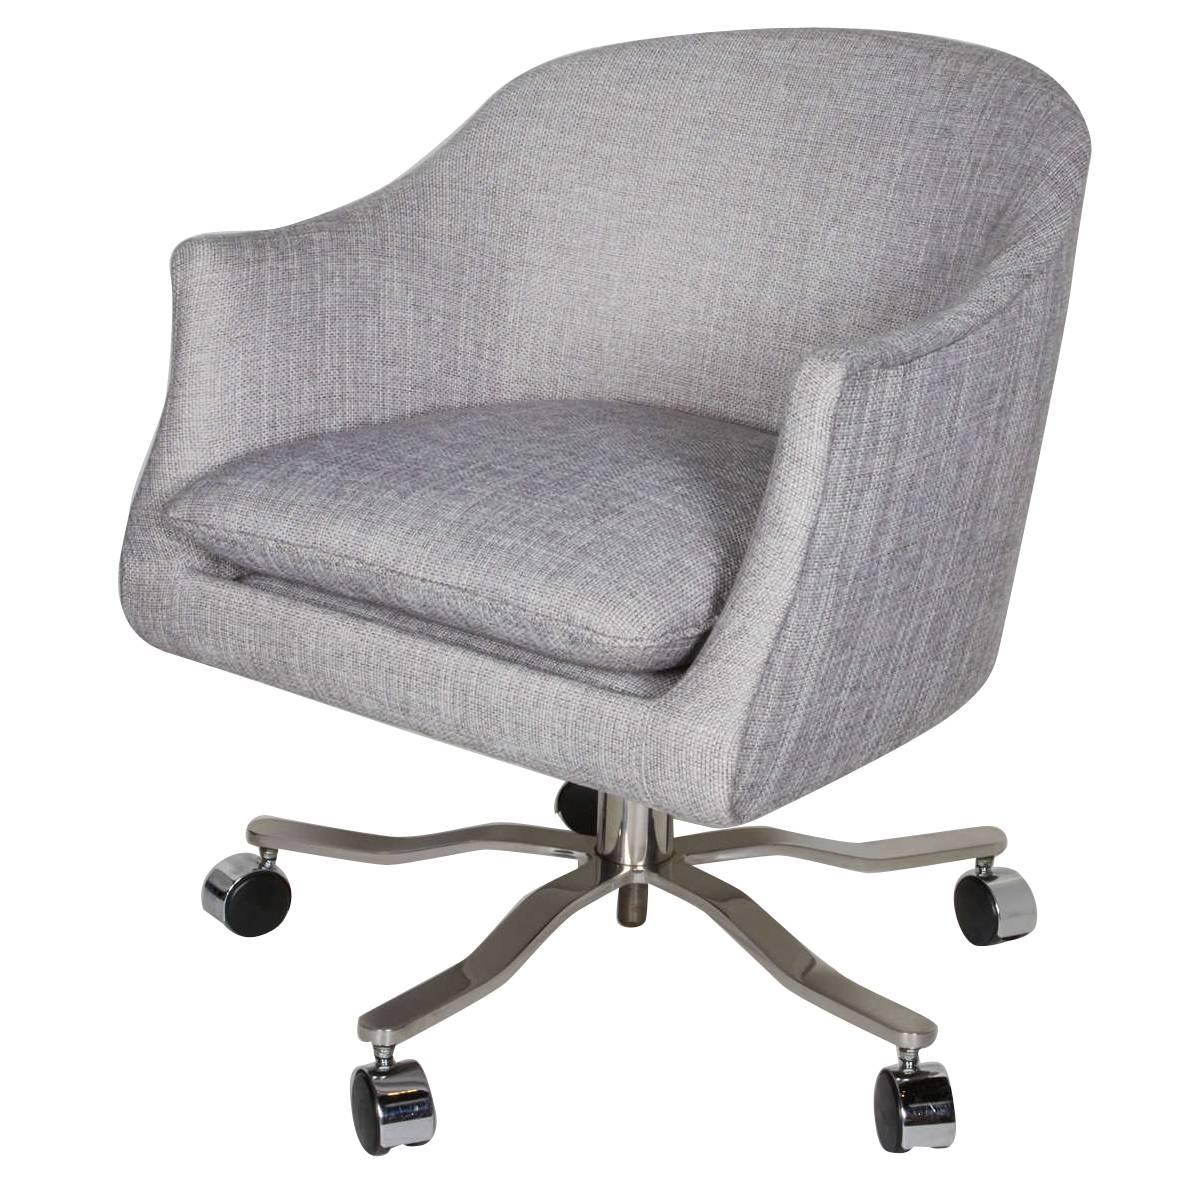 Mid-Century Modern Swivel Desk Chair Designed by Ward Bennett (Moderne der Mitte des Jahrhunderts)